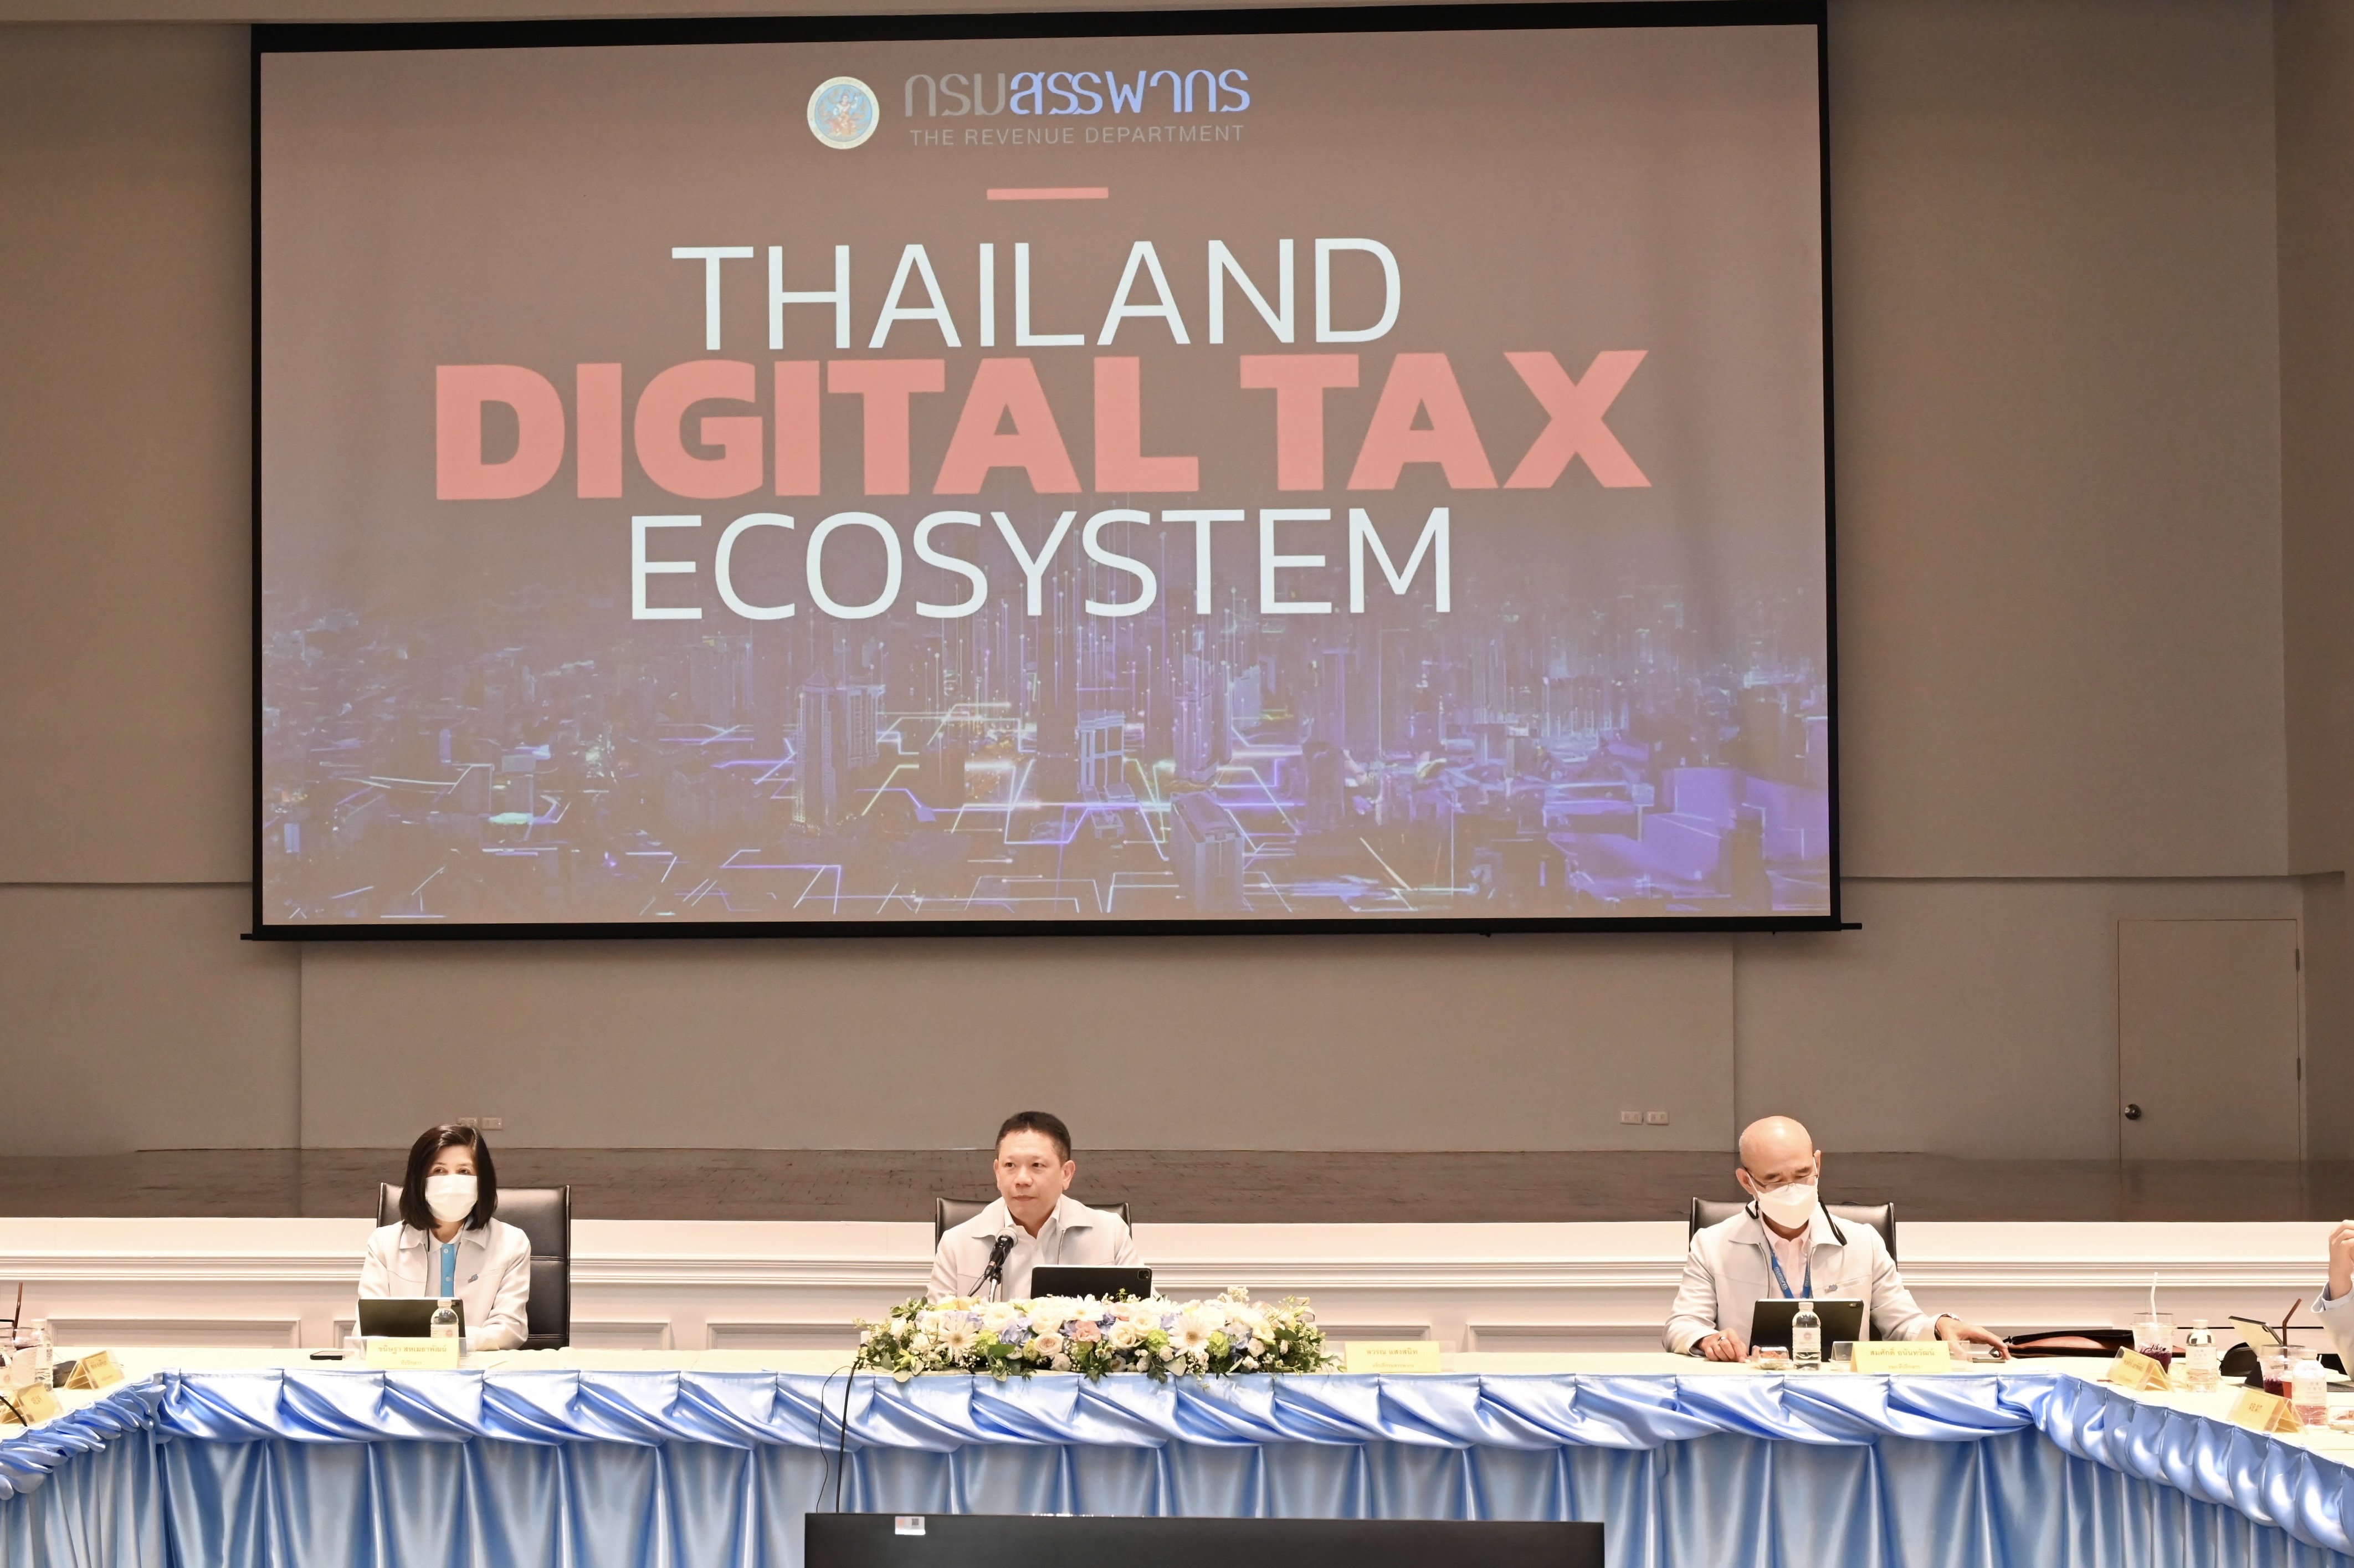 กรมสรรพากรจัดสัมมนา เรื่อง “ทิศทางการขับเคลื่อนDigital Tax Ecosystem ของประเทศไทย”